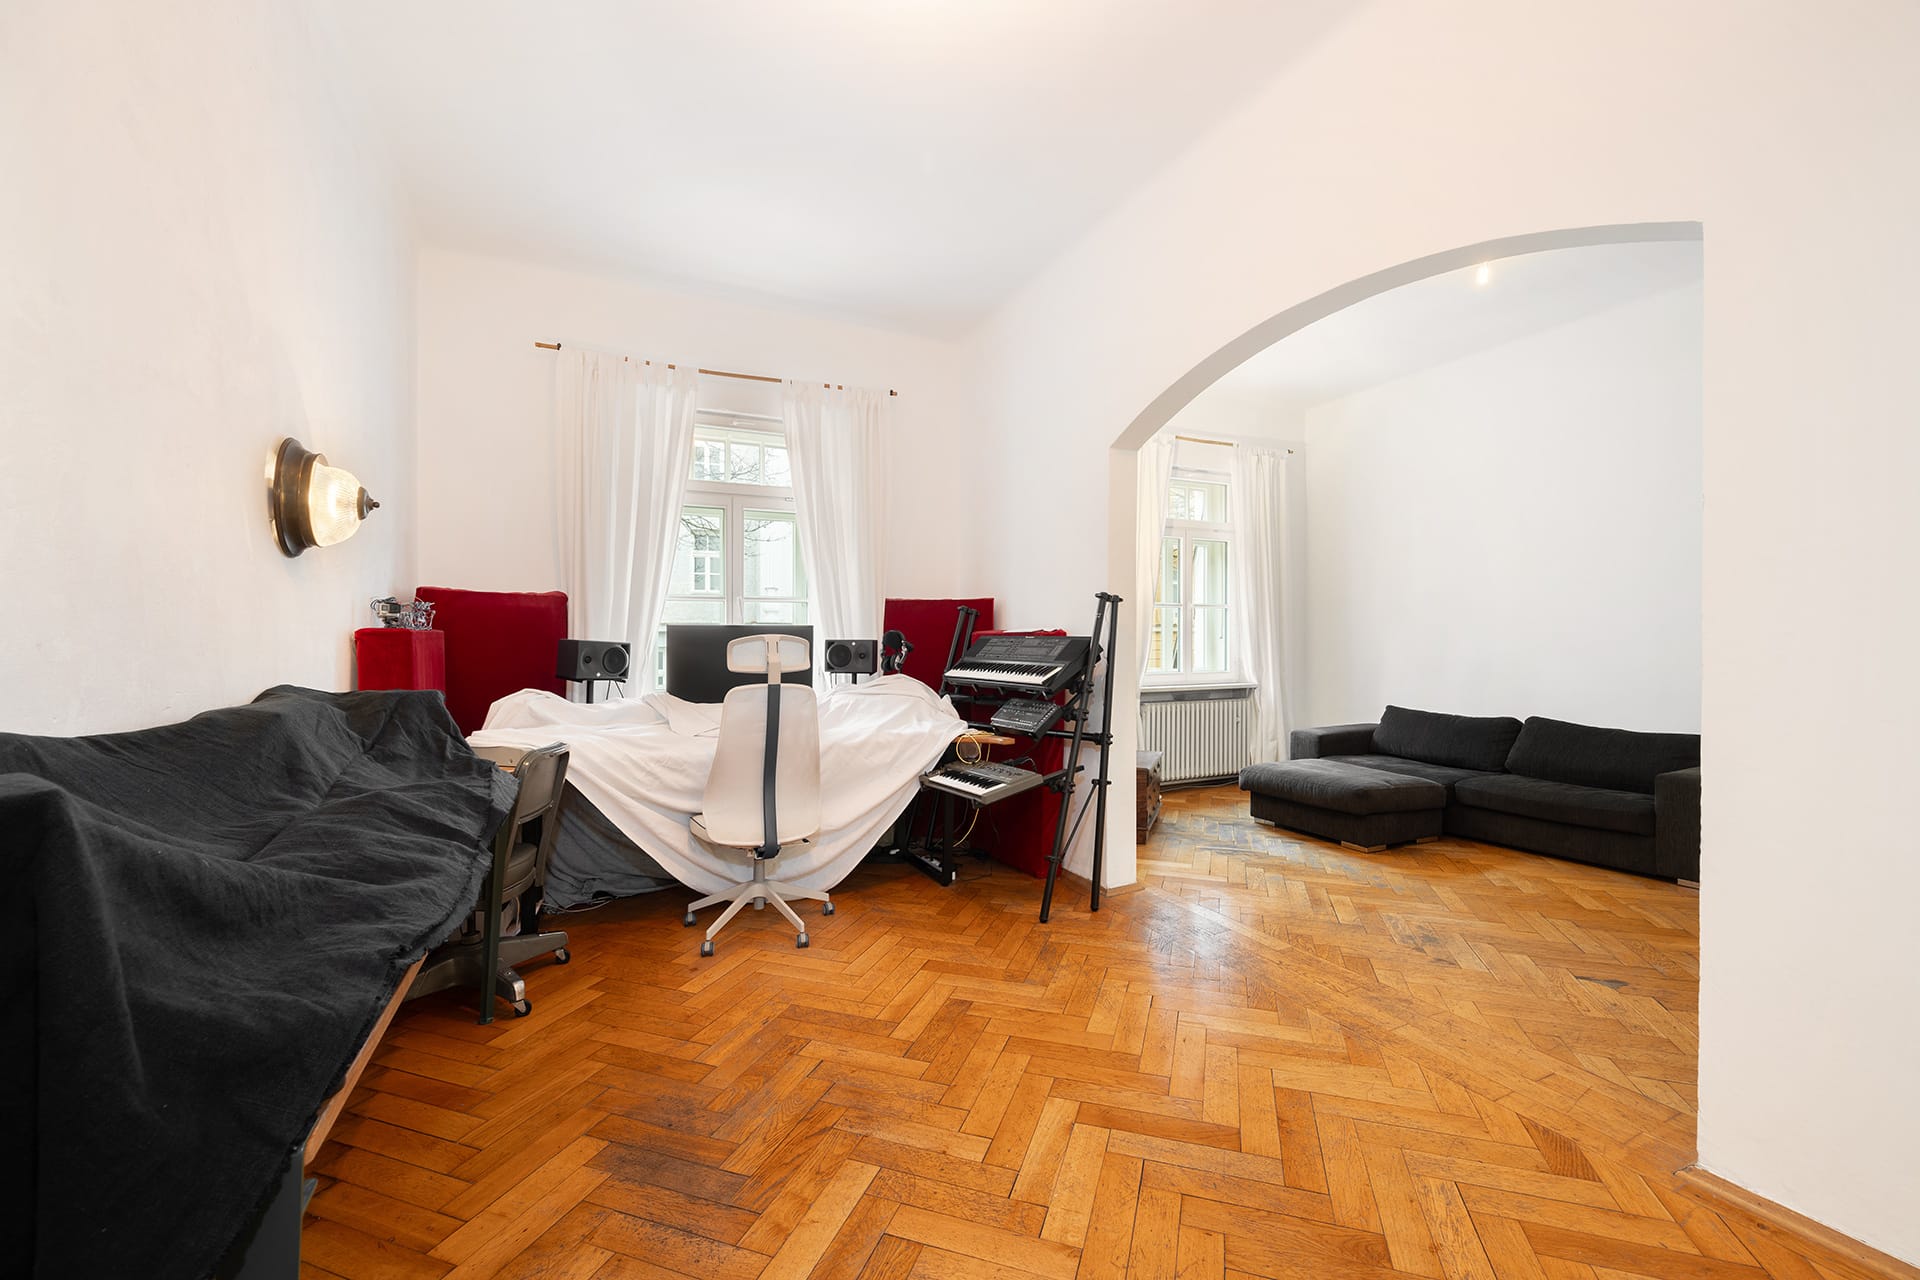 Außergewöhnliche, denkmalgeschützte 3-Zimmer-Stadtwohnung in München-Schwabing - Wohnzimmer mit Segmentbogen